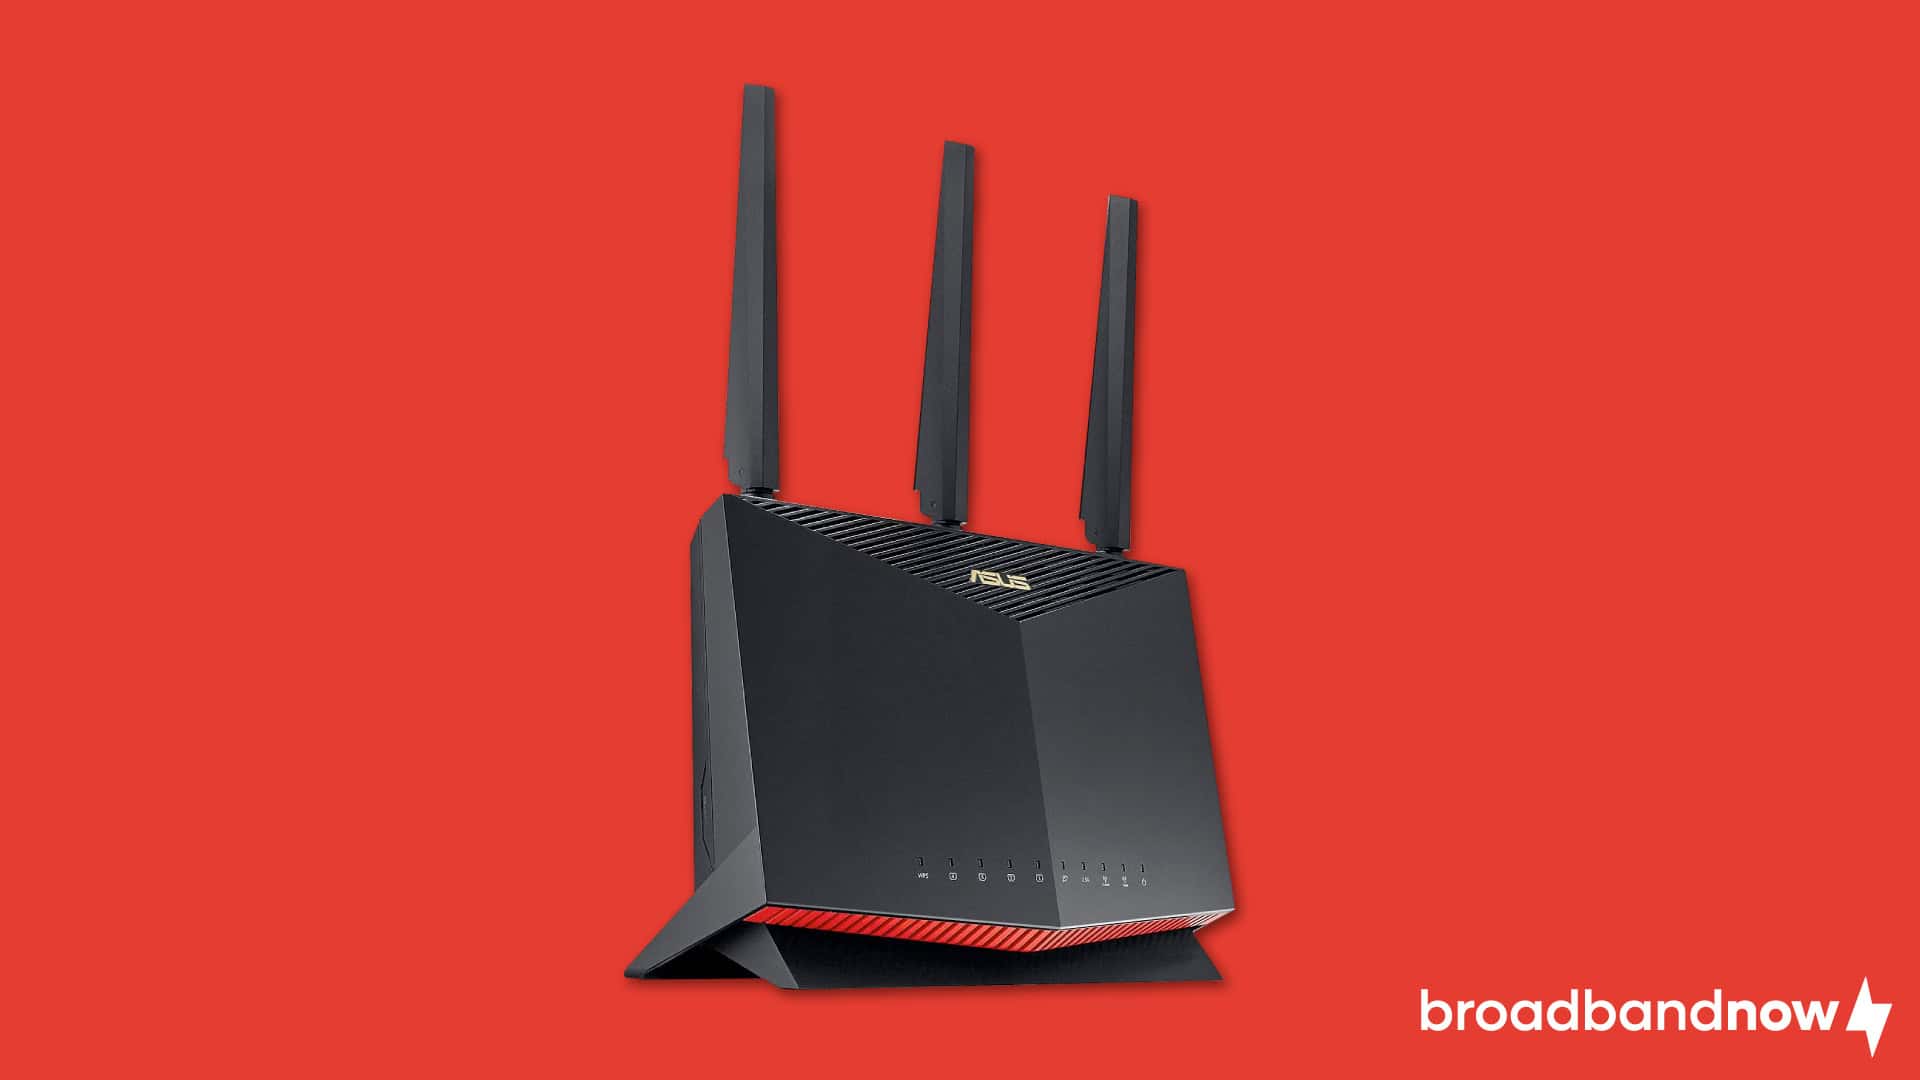 Image of an Asus RT-AX82U Wi-Fi router on a red background